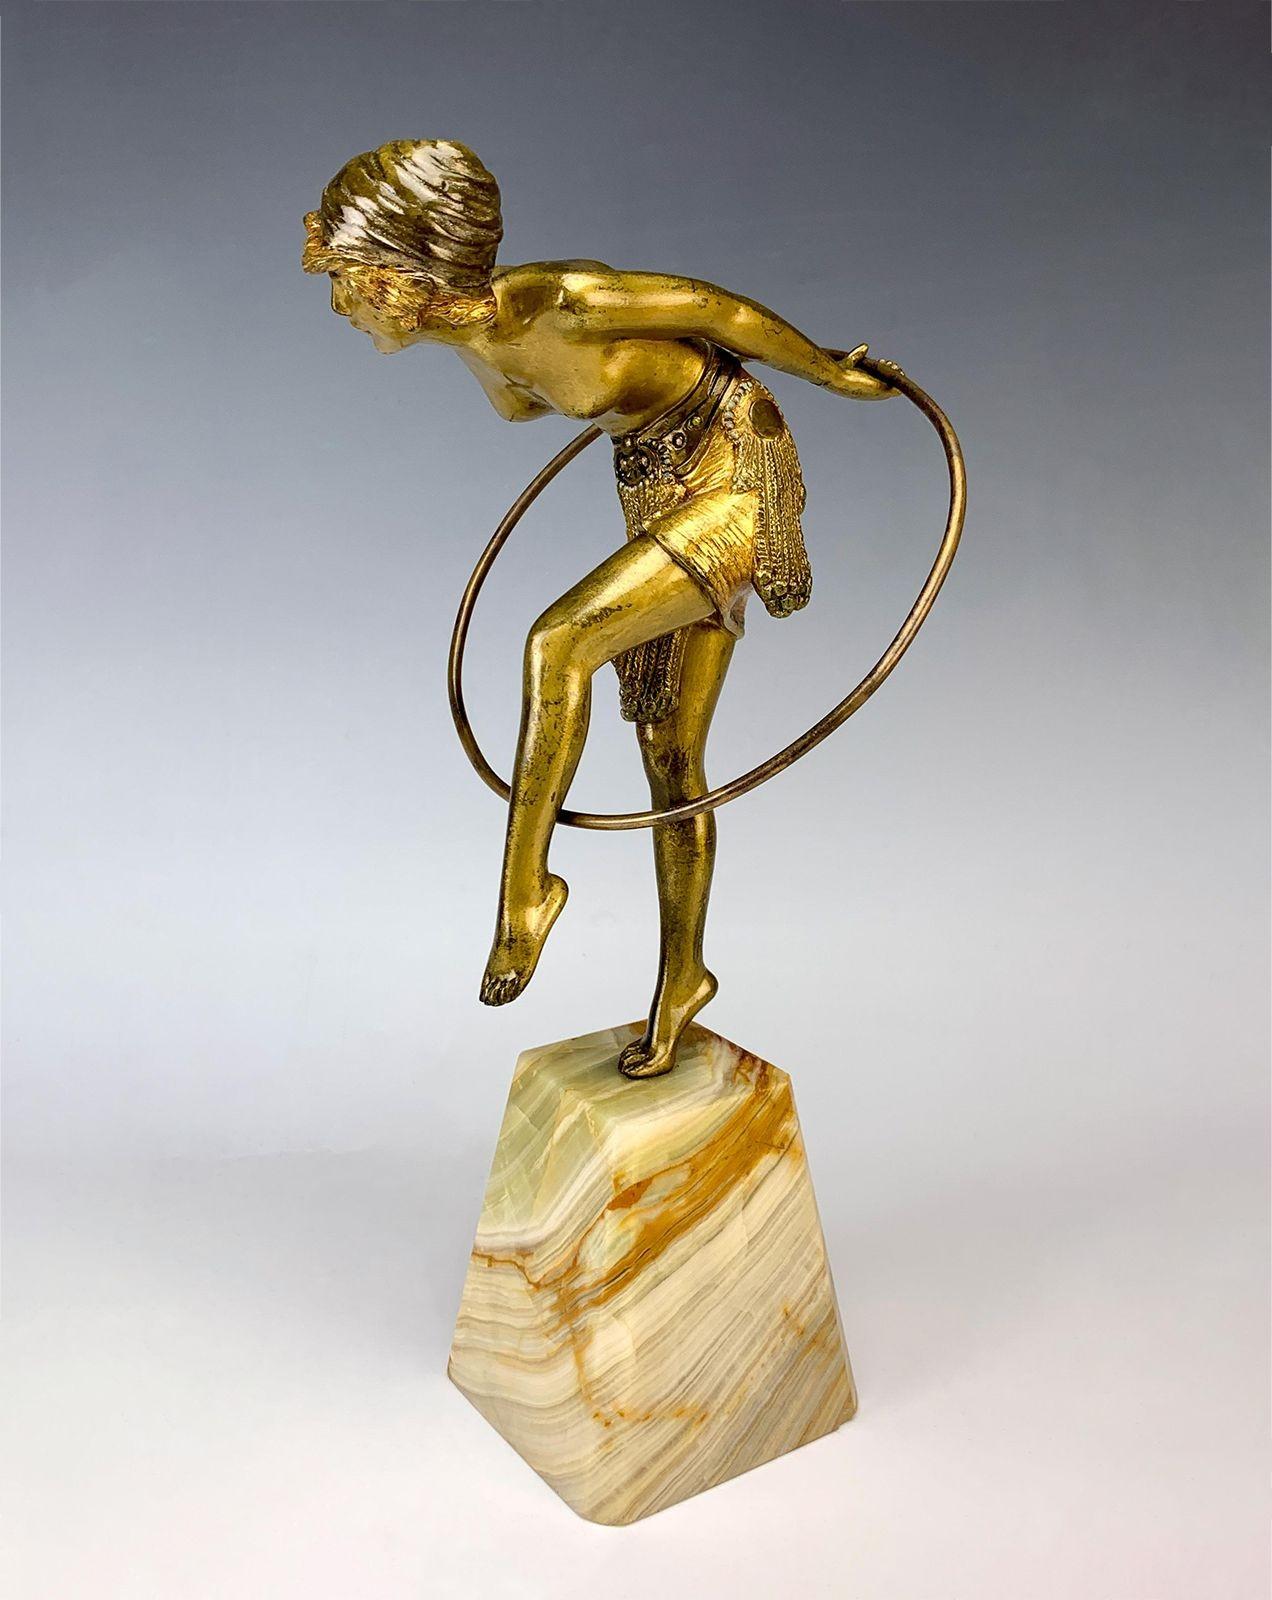 Cette sculpture en bronze doré de Demétre Chiparus est une charmante représentation du mouvement et de la grâce. Elle représente une danseuse de cerceau faisant tournoyer élégamment son cerceau autour de son corps. La sculpture repose gracieusement